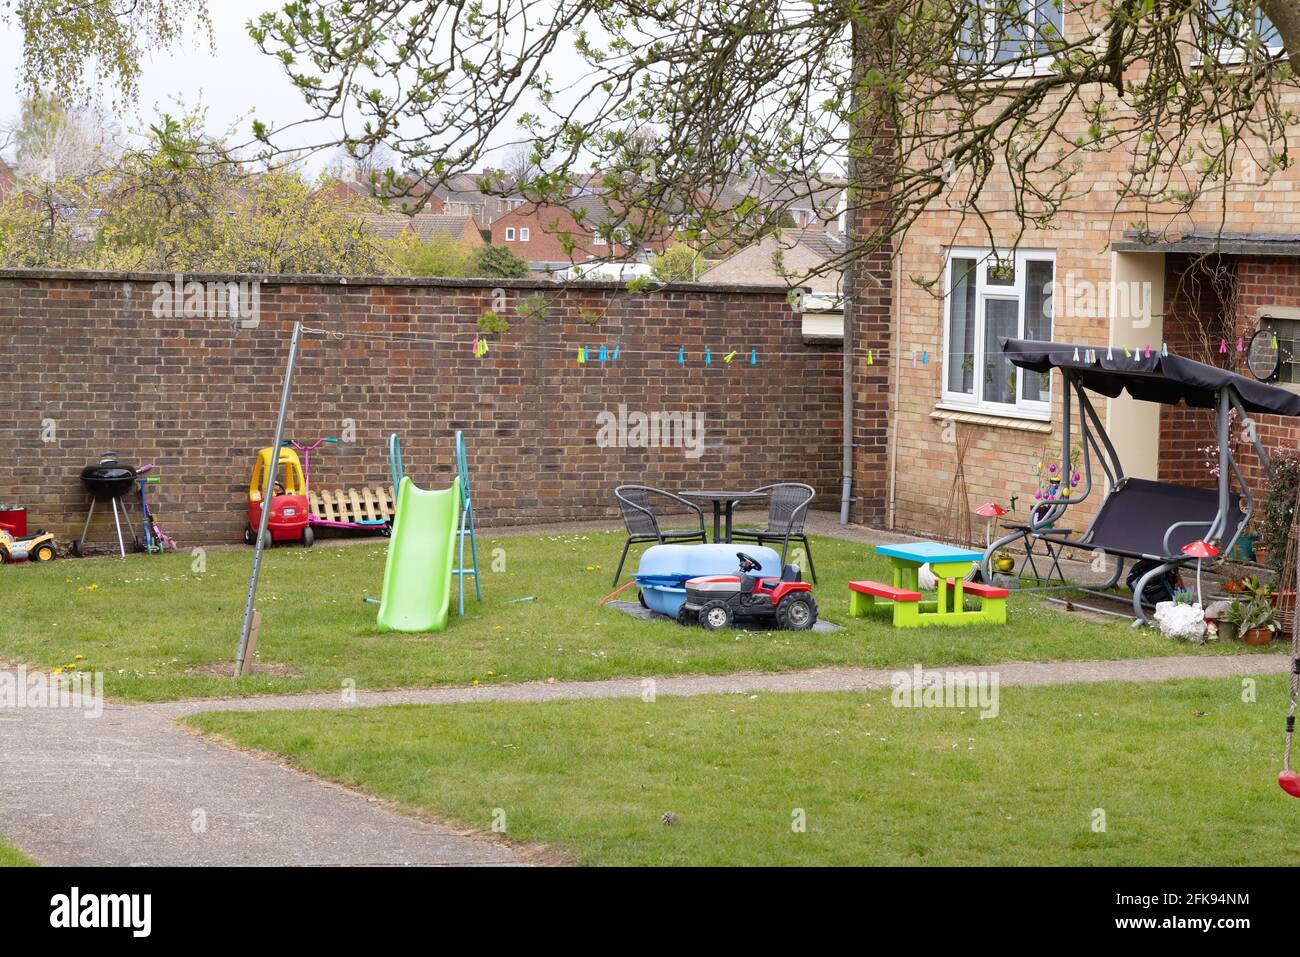 Vorgarten Großbritannien; ein Vorgarten eines Reihenhauses voller Kinderspielzeug; Suffolk UK, Beispiel für britischen Lebensstil und Familienhaus Großbritannien Stockfoto